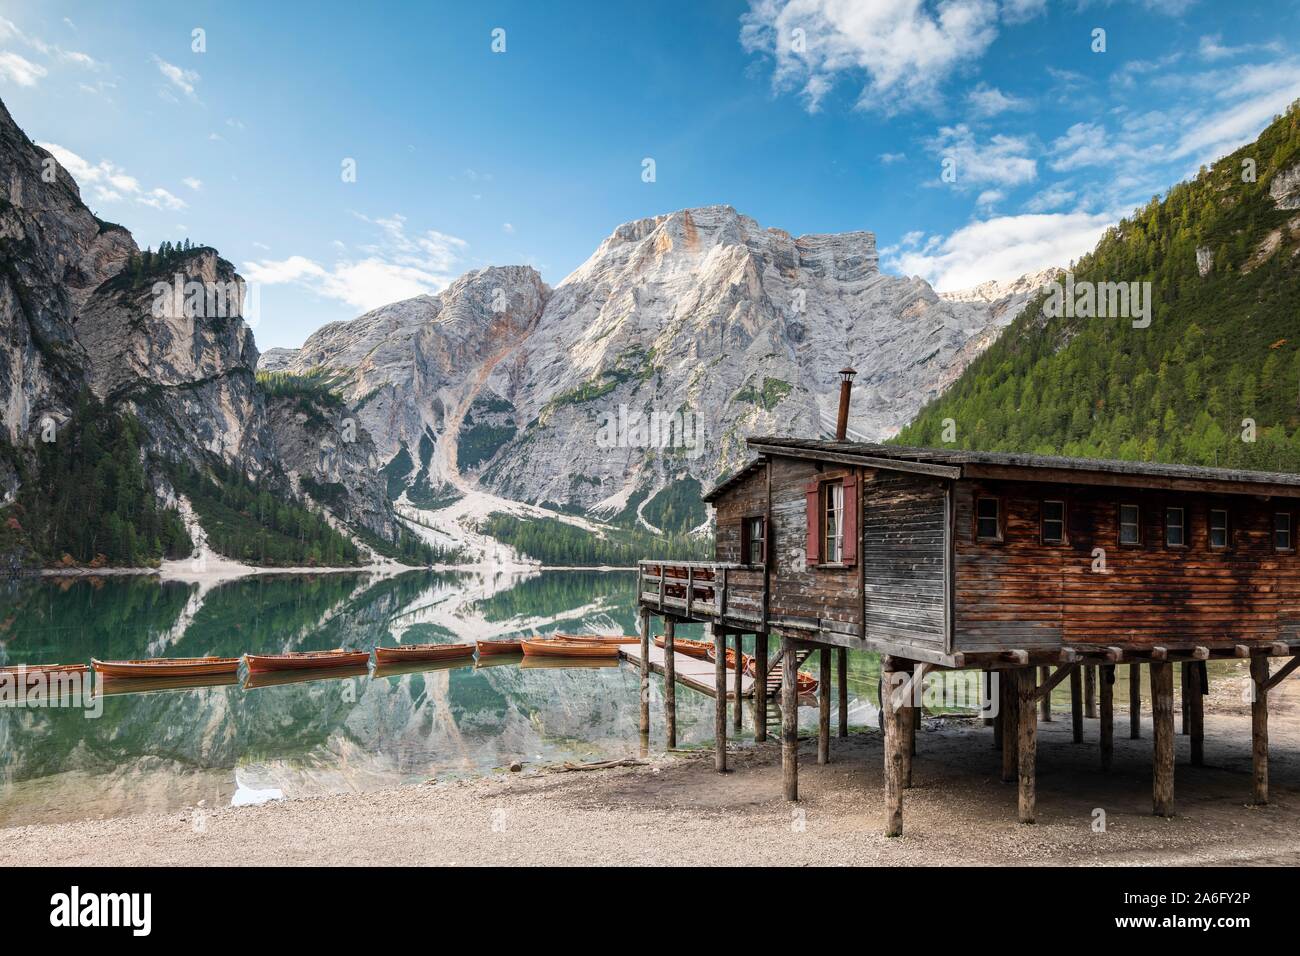 Lago Braies, lago de montaña con el boathouse y barcos, detrás de él, Prags Seekofel, dolomitas, Tirol del Sur, el Alto Adige, Italia Foto de stock